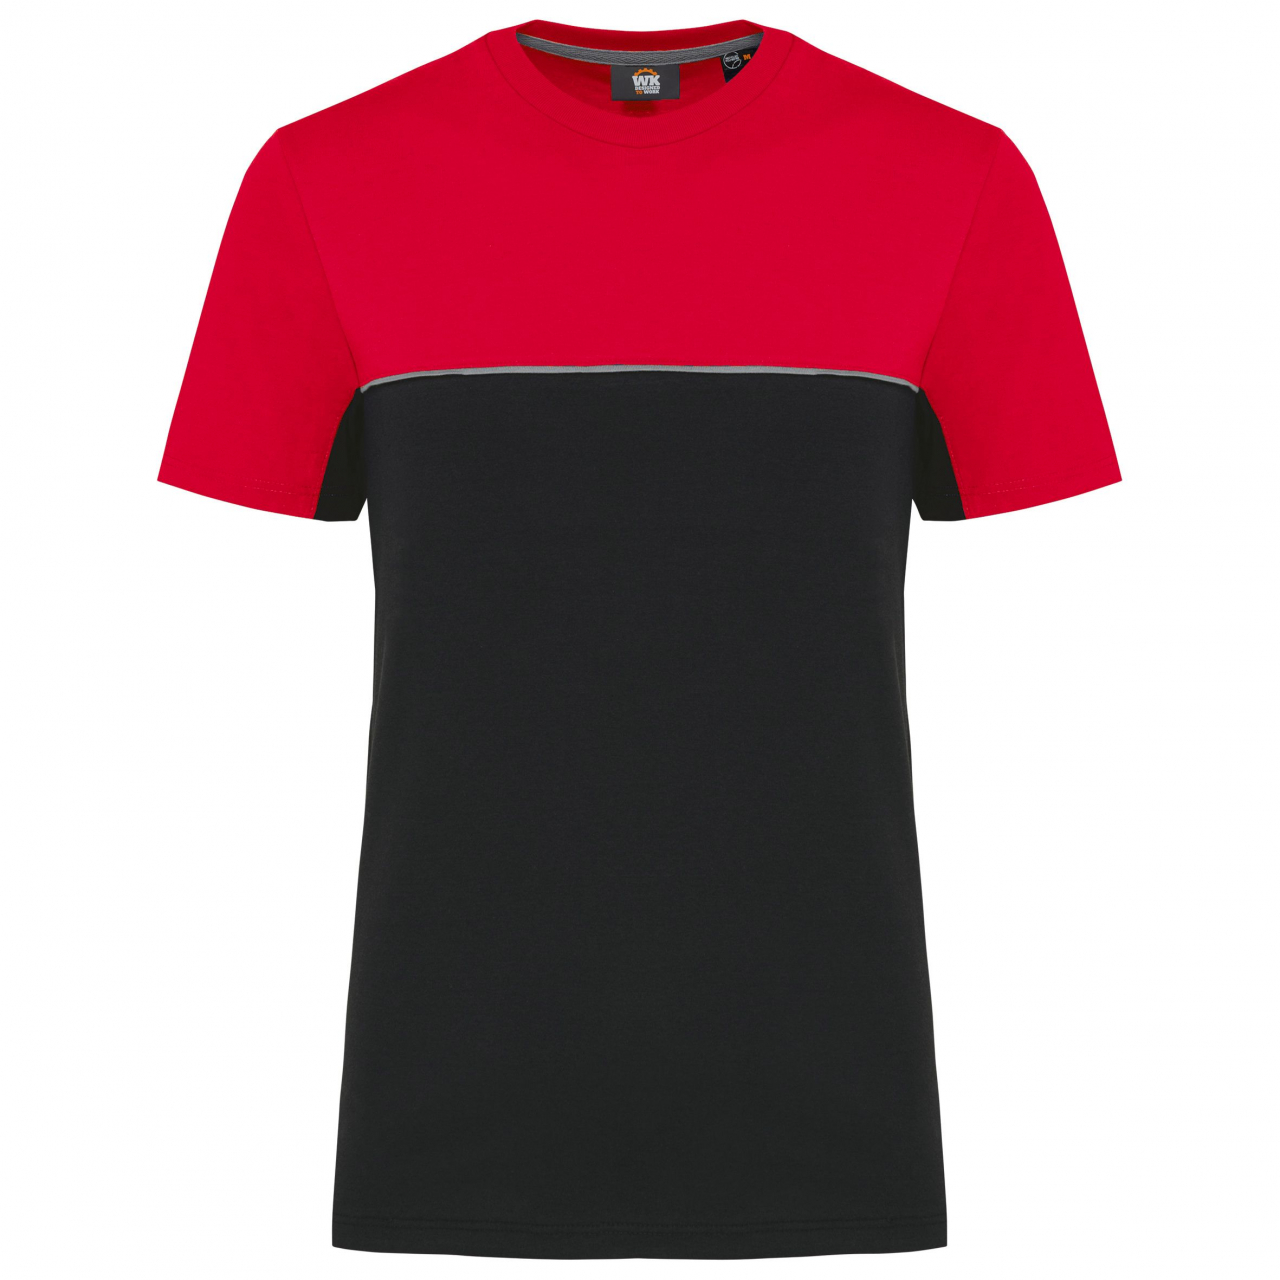 Pracovní triko dvoubarevné WK - černé-červené, L